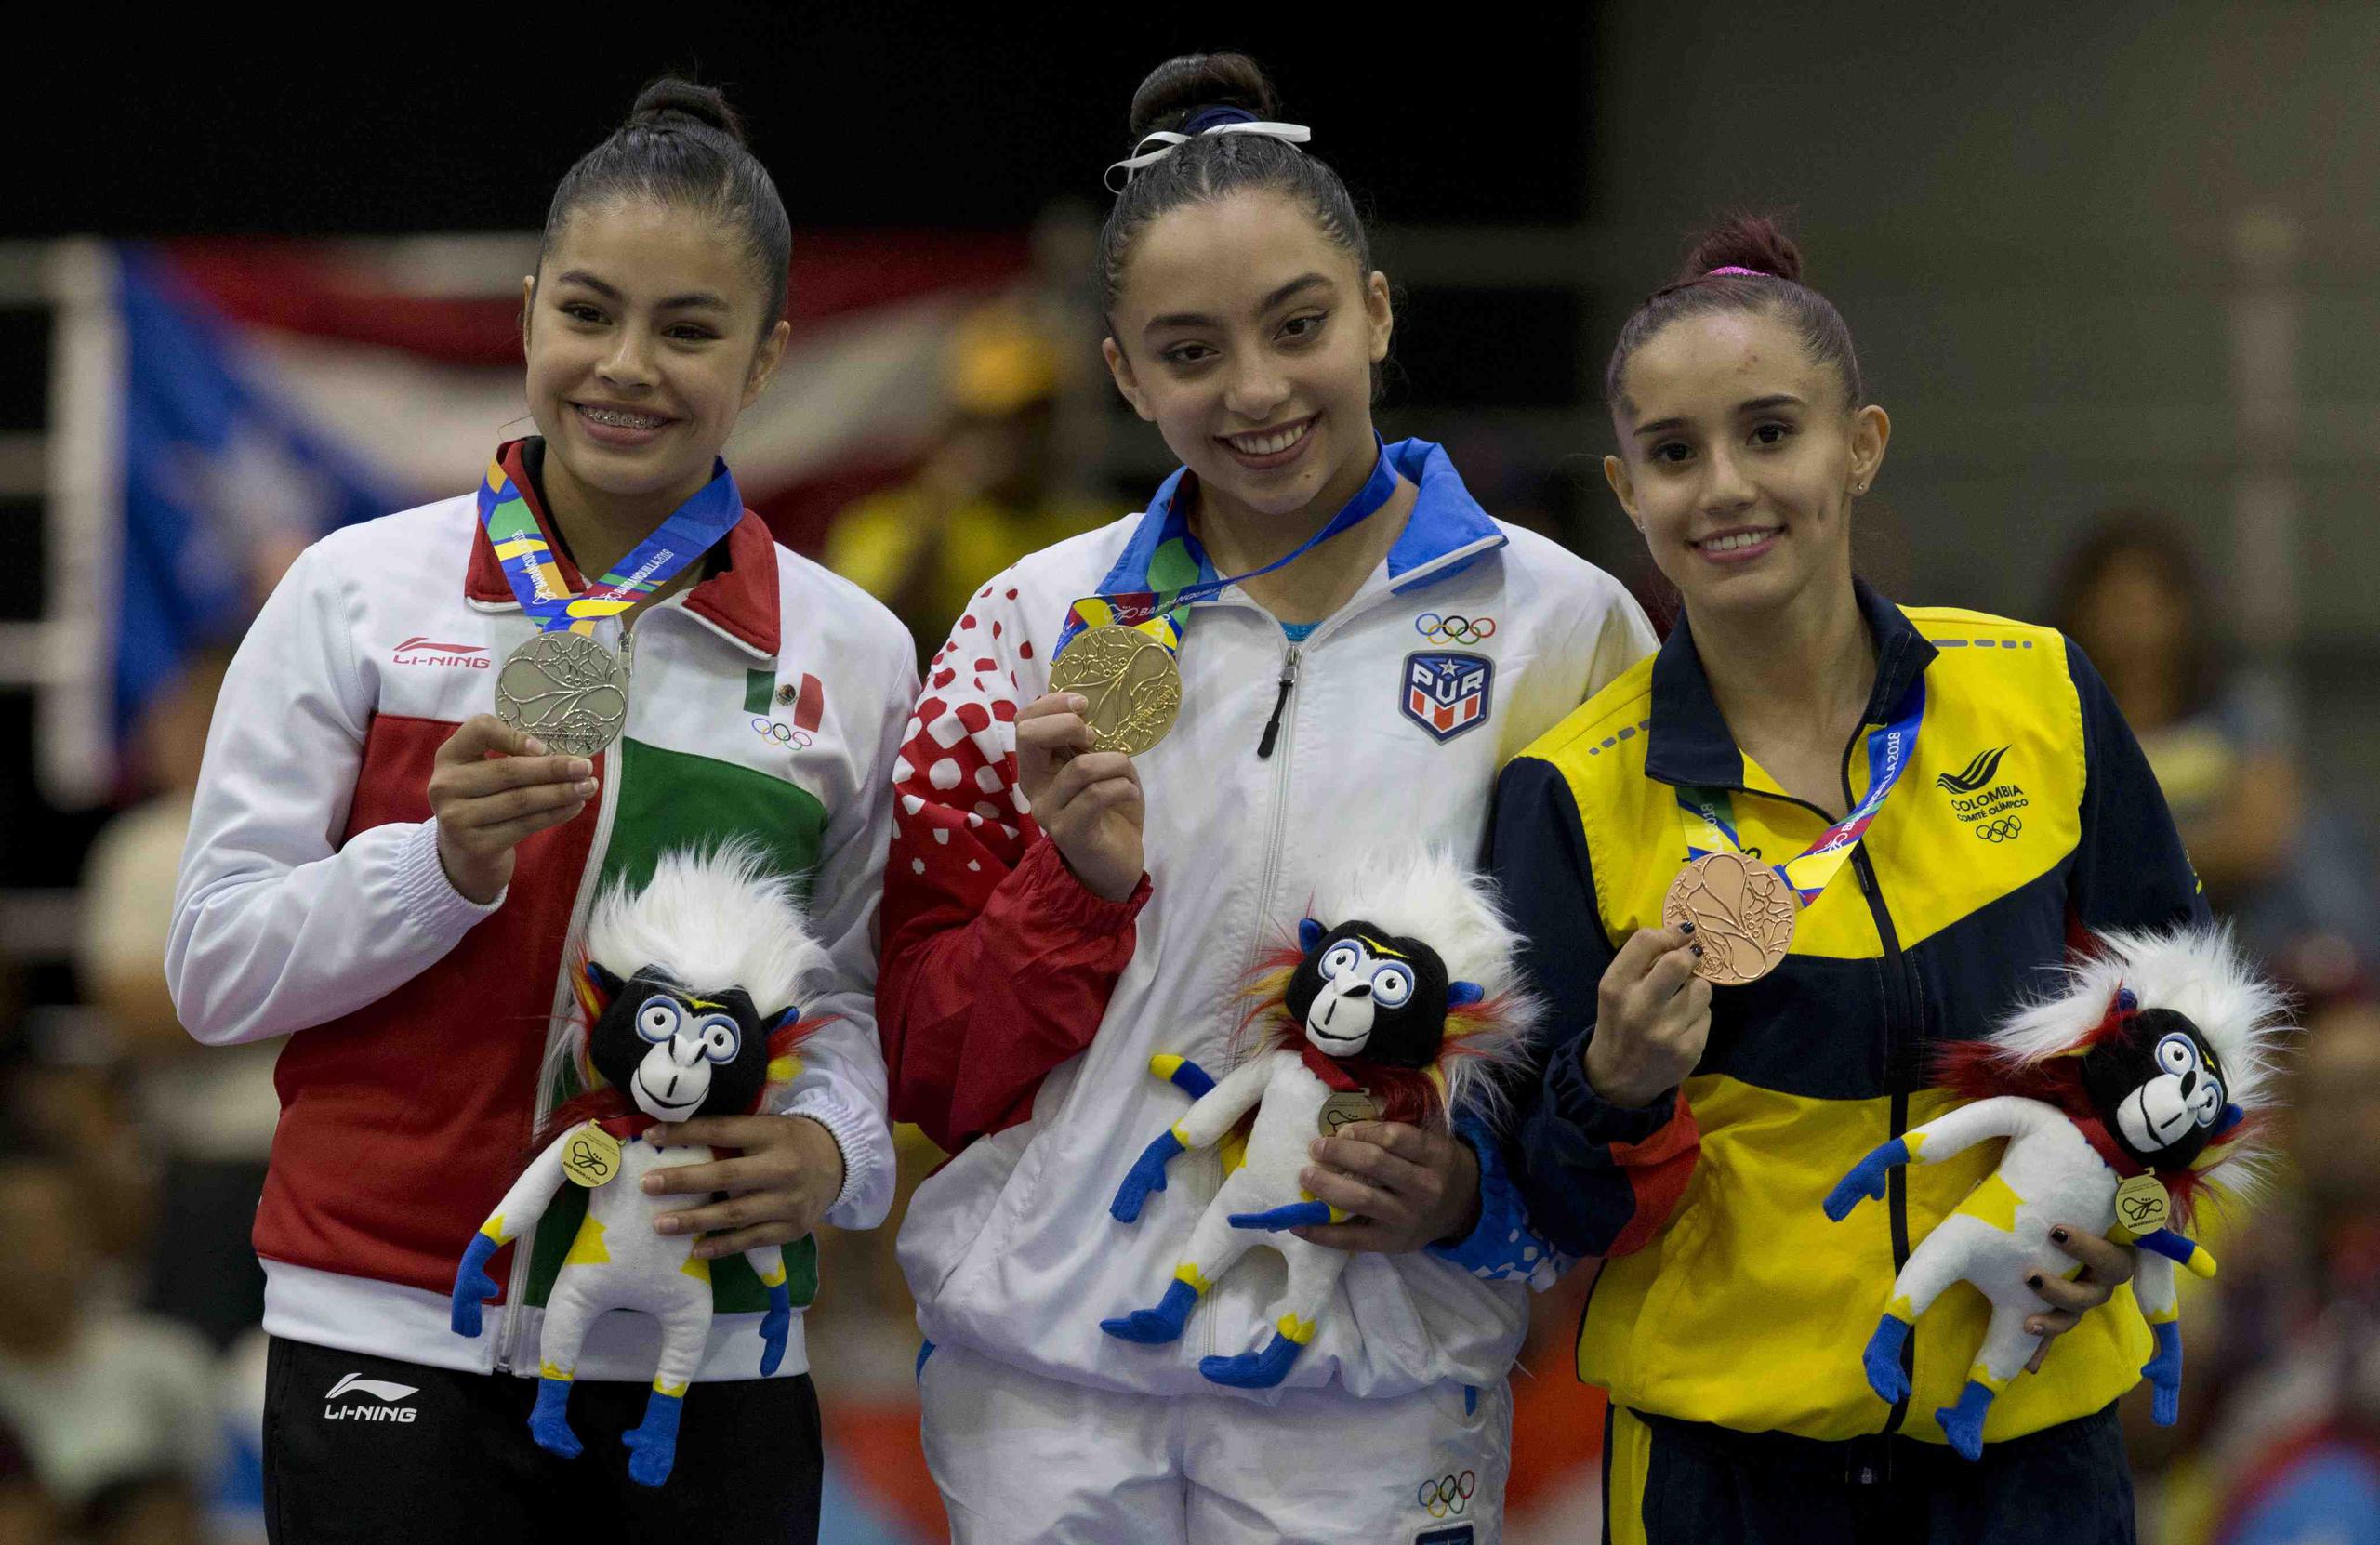 Bianca Leon (oro) junto a la mexicana Jimena Moreno (plata) y la colombiana Dayana Ardila (bronce). (Xavier Araujo | xavier.araujo@gfrmedia.com)